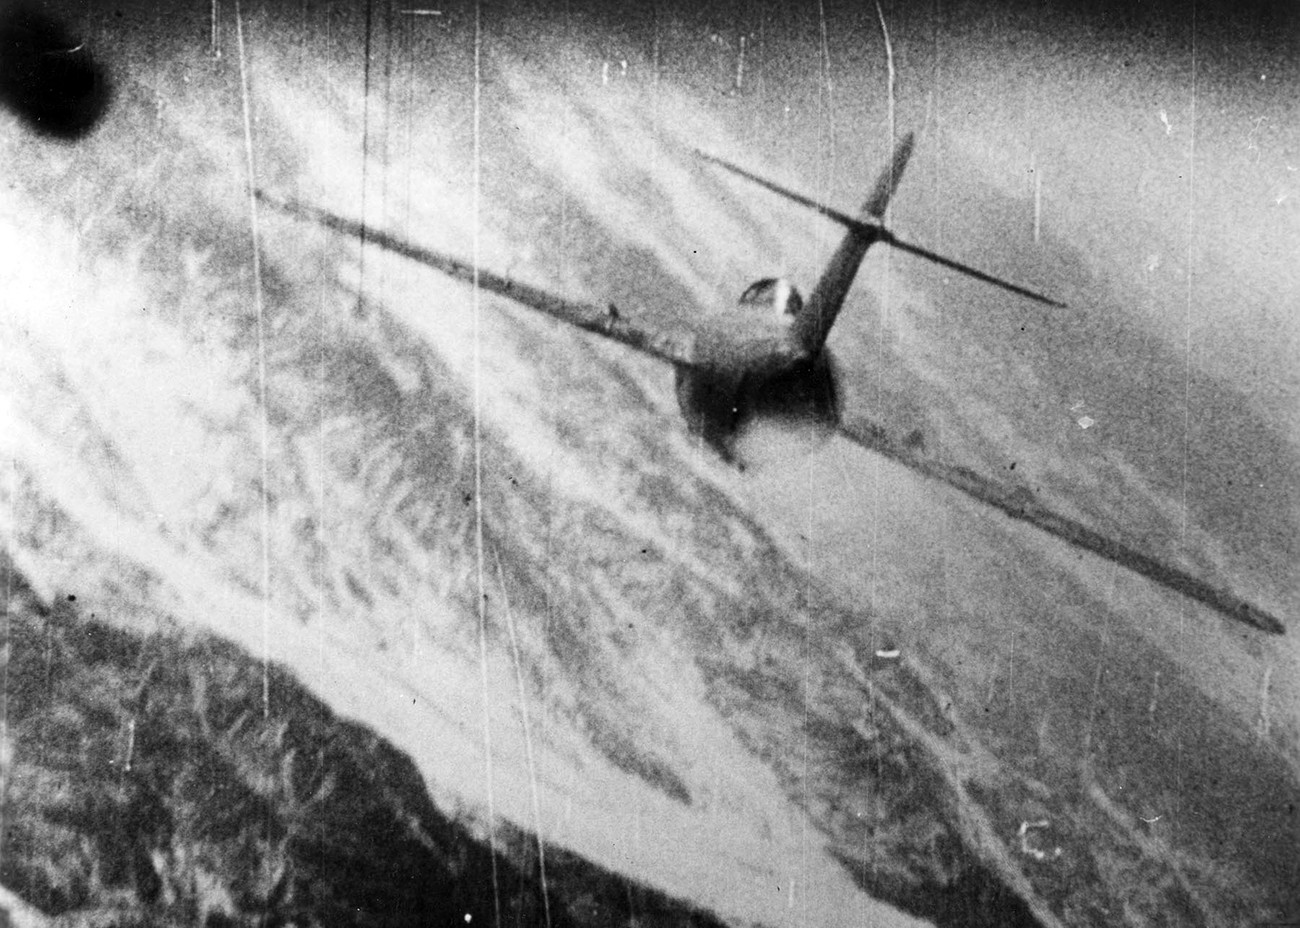 El caza soviético MiG-15 atacado por el F-86 Sabre estadounidense sobre Corea en 1952-53.